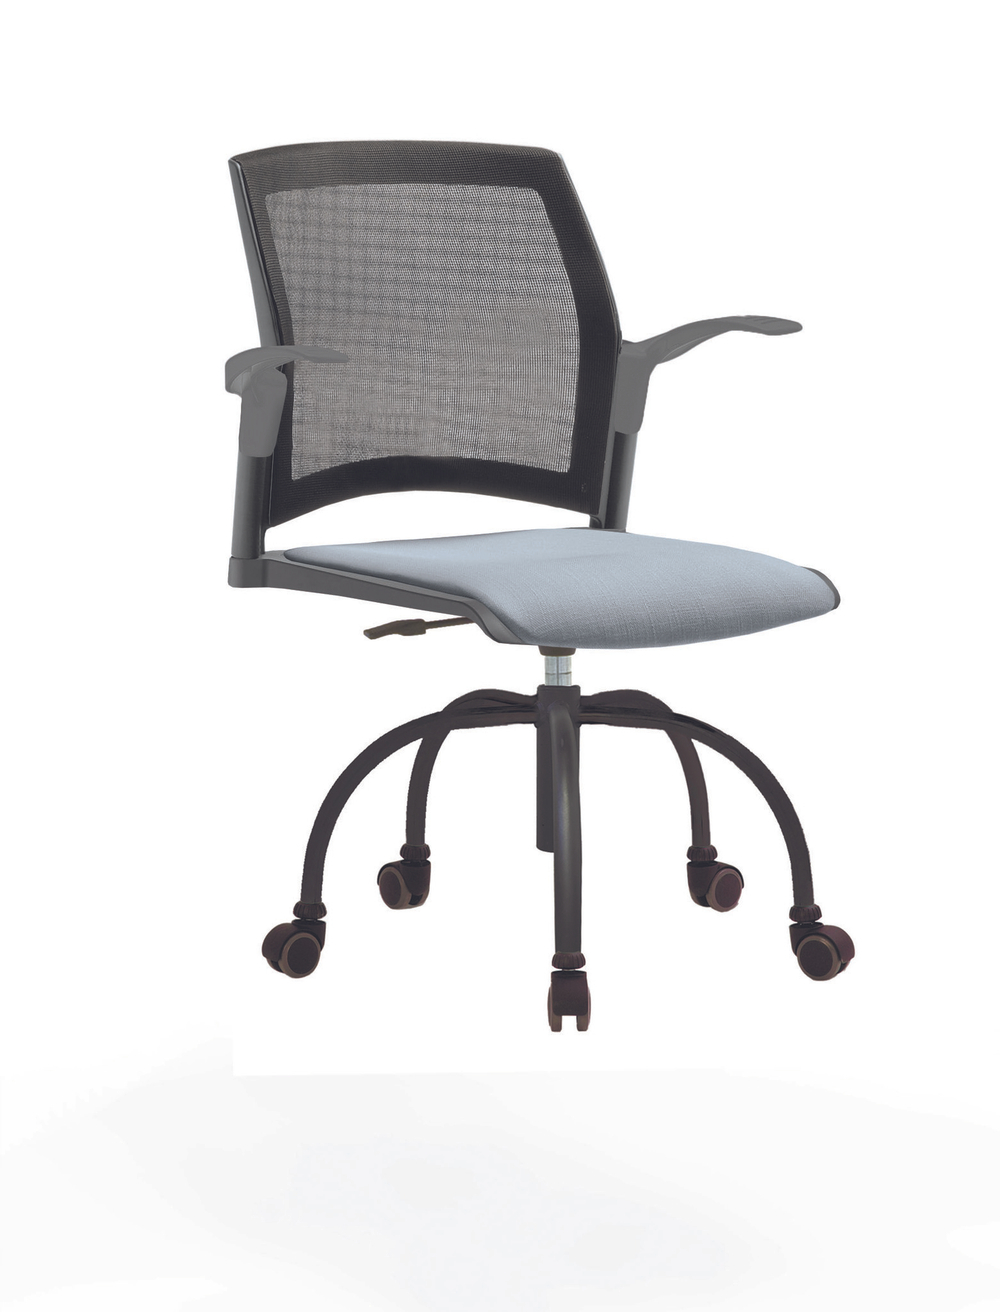 Кресло Rewind каркас черный, пластик серый, база паук краска черная, с открытыми подлокотниками, сиденье серо-голубое, спинка-сетка